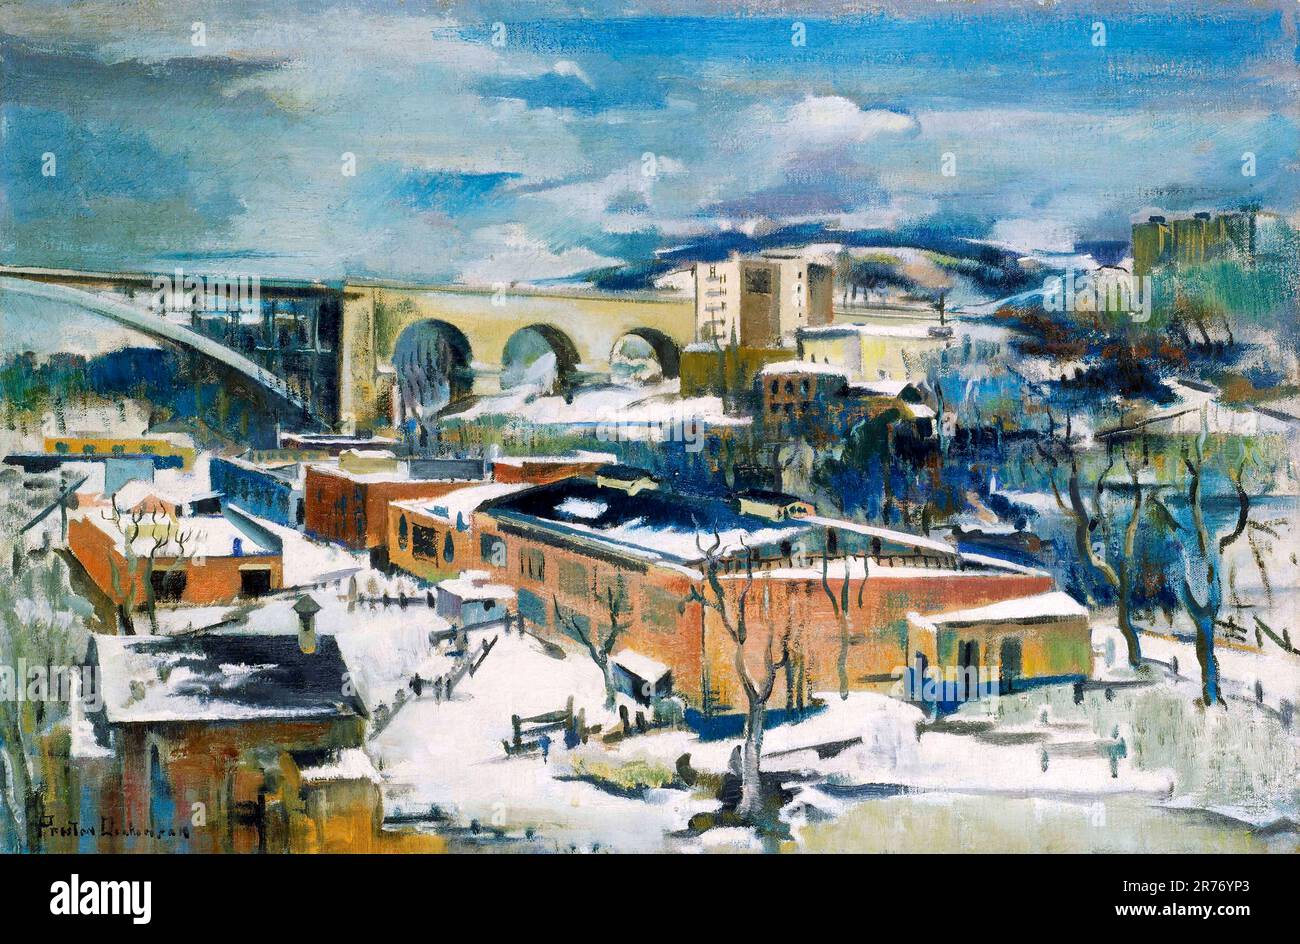 Winter, Harlem River vom amerikanischen Künstler Preston Dickinson (1889-1930), Öl auf Leinwand Stockfoto